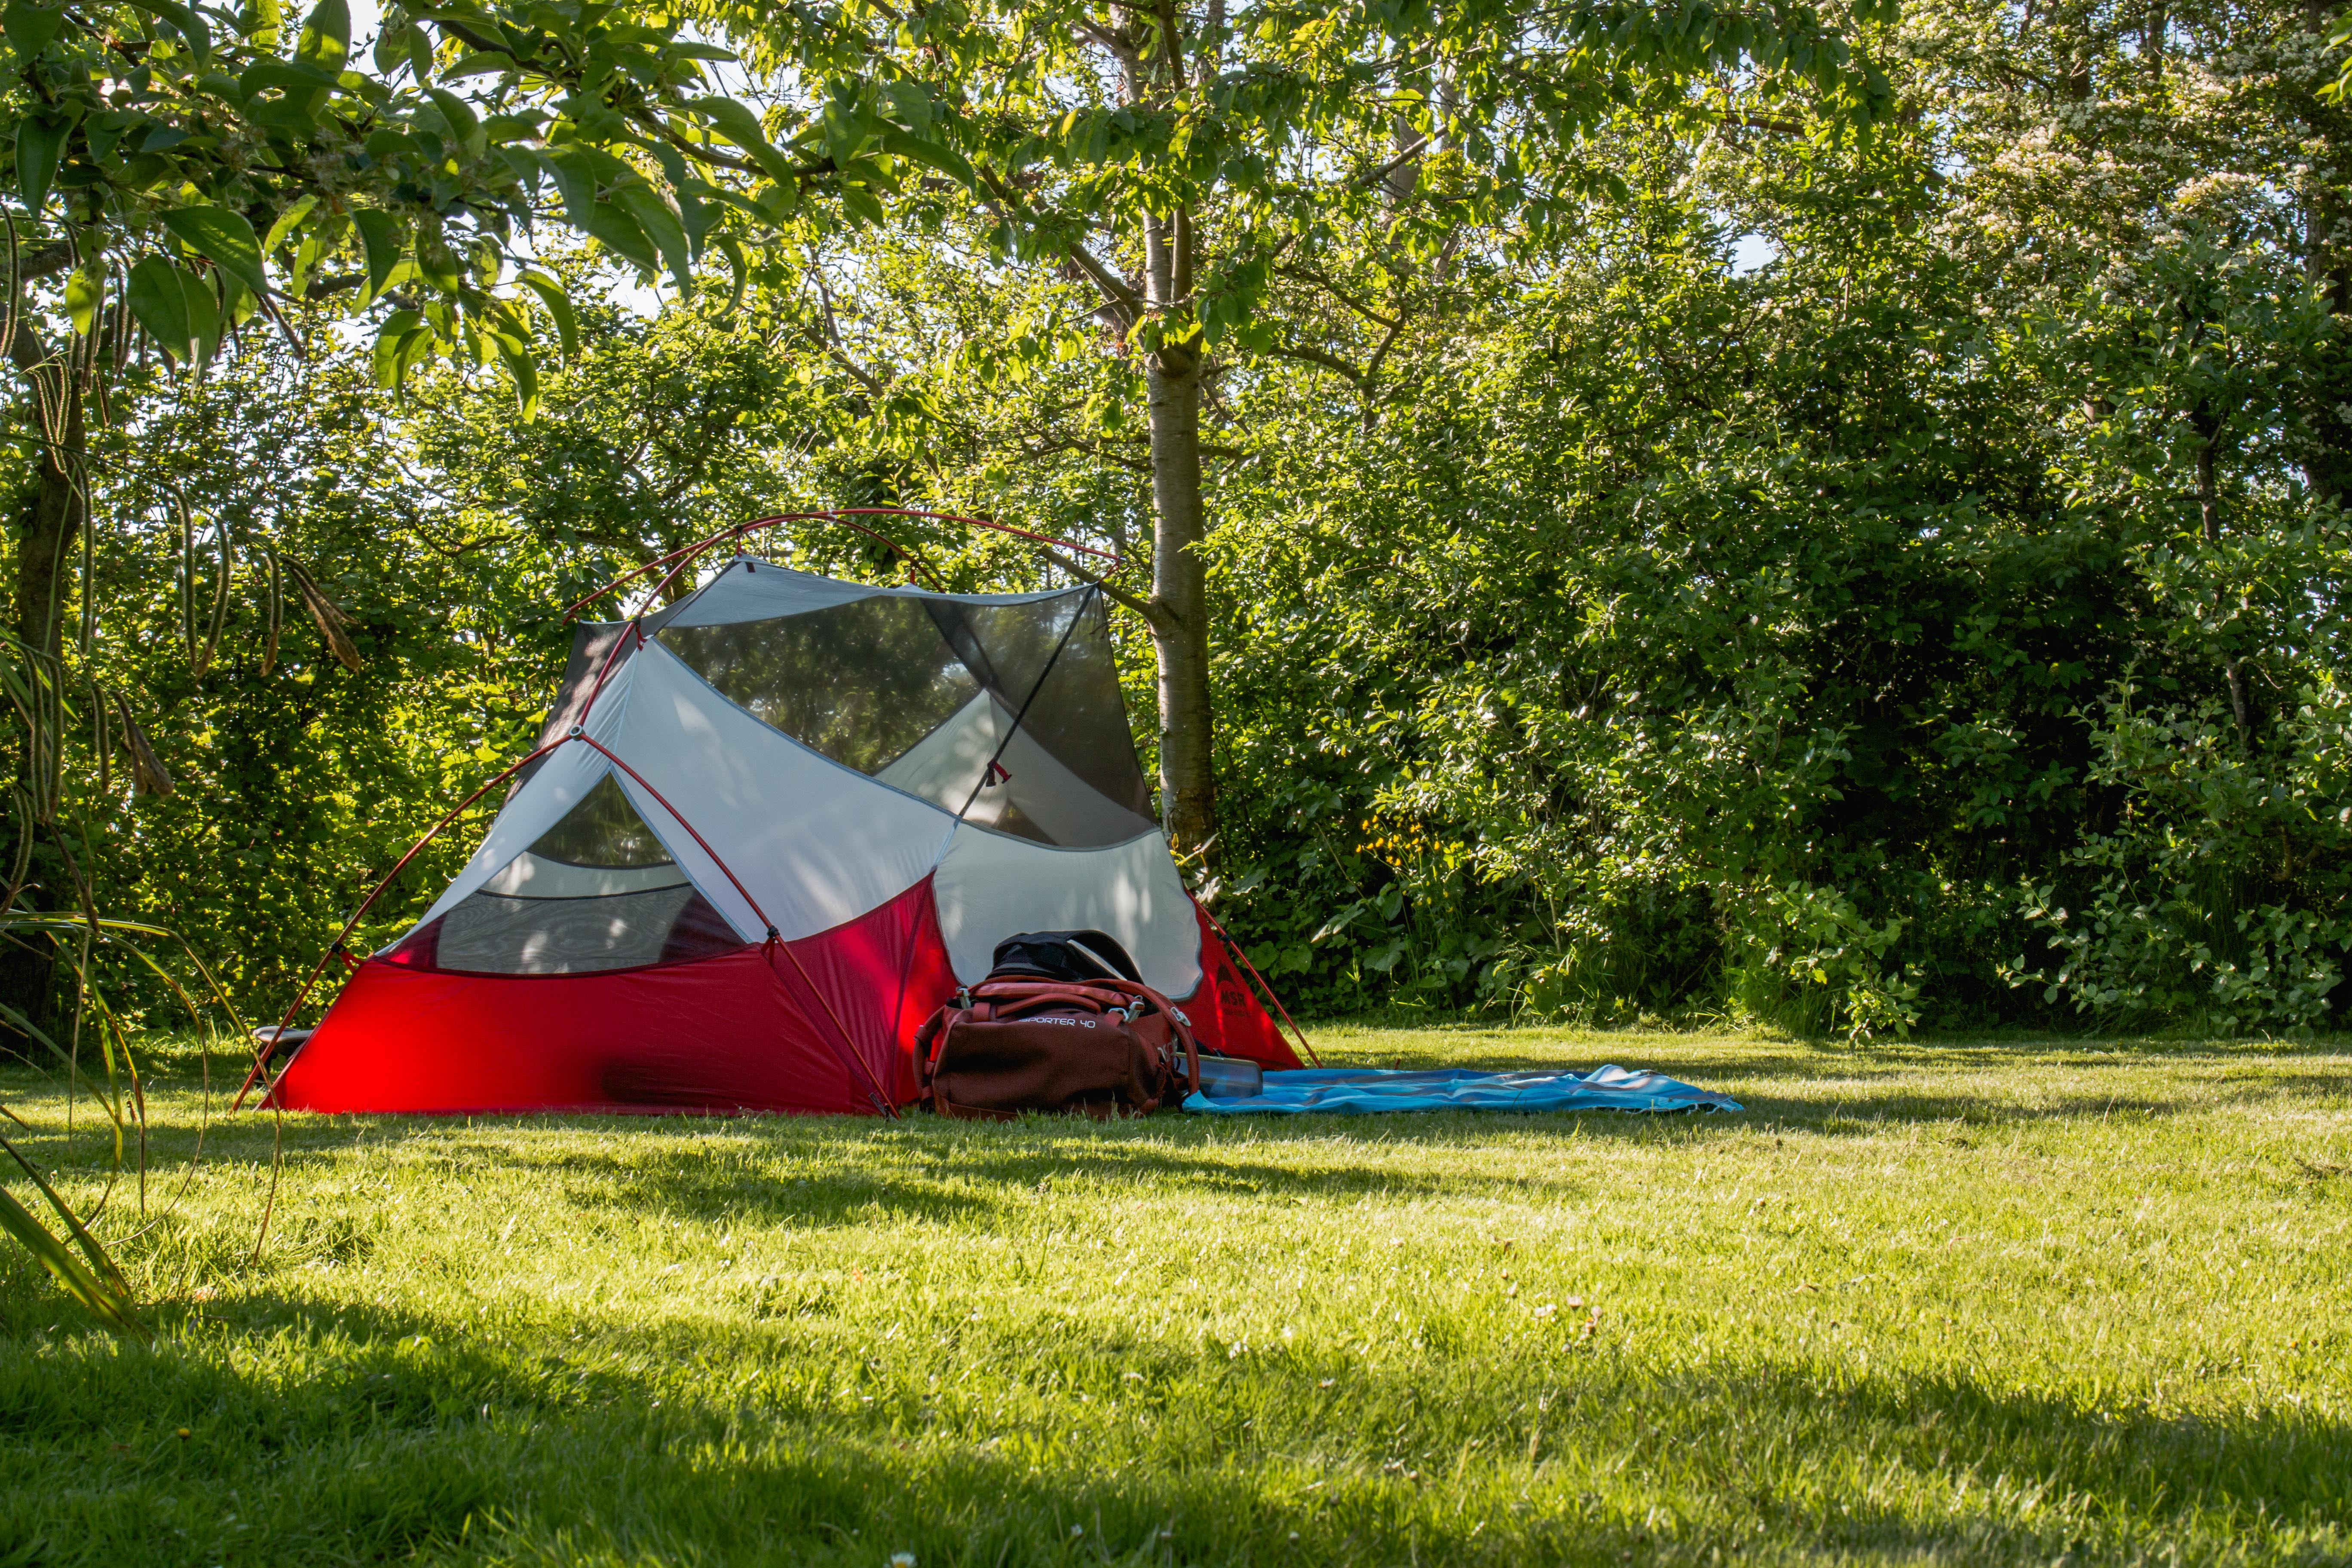 kleine campings Nederland, kleine camping